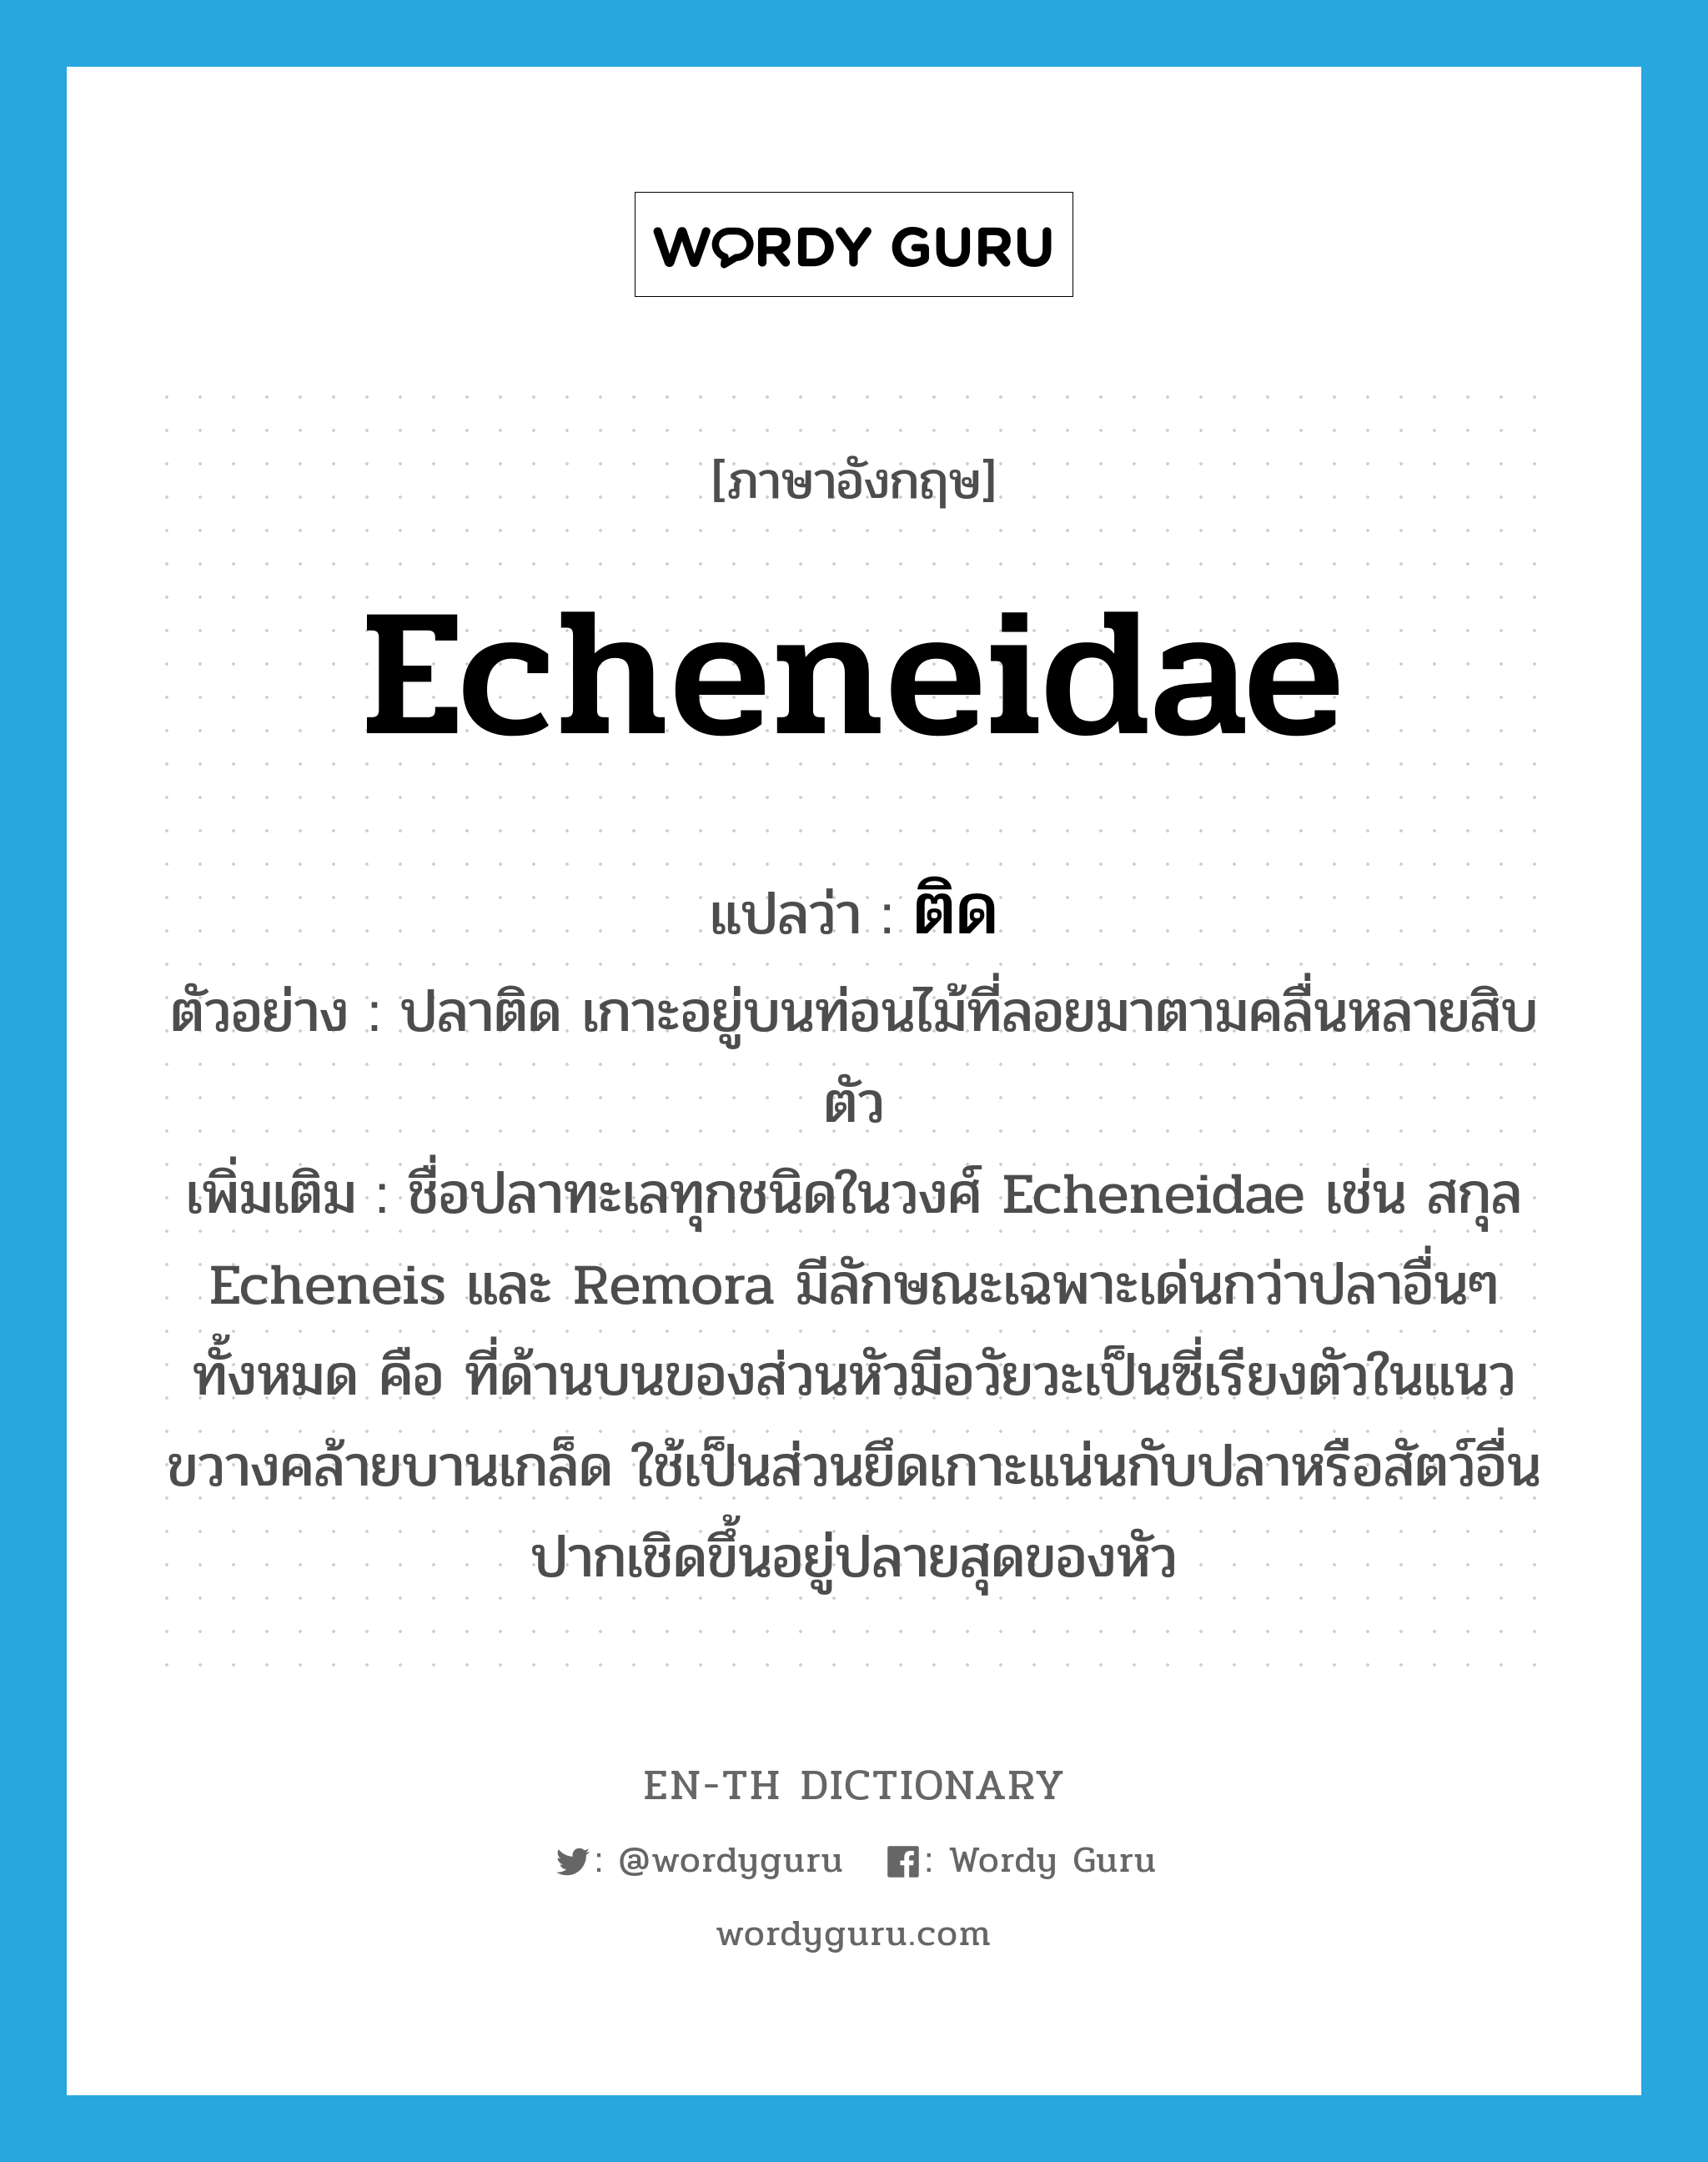 Echeneidae แปลว่า?, คำศัพท์ภาษาอังกฤษ Echeneidae แปลว่า ติด ประเภท N ตัวอย่าง ปลาติด เกาะอยู่บนท่อนไม้ที่ลอยมาตามคลื่นหลายสิบตัว เพิ่มเติม ชื่อปลาทะเลทุกชนิดในวงศ์ Echeneidae เช่น สกุล Echeneis และ Remora มีลักษณะเฉพาะเด่นกว่าปลาอื่นๆ ทั้งหมด คือ ที่ด้านบนของส่วนหัวมีอวัยวะเป็นซี่เรียงตัวในแนวขวางคล้ายบานเกล็ด ใช้เป็นส่วนยึดเกาะแน่นกับปลาหรือสัตว์อื่น ปากเชิดขึ้นอยู่ปลายสุดของหัว หมวด N